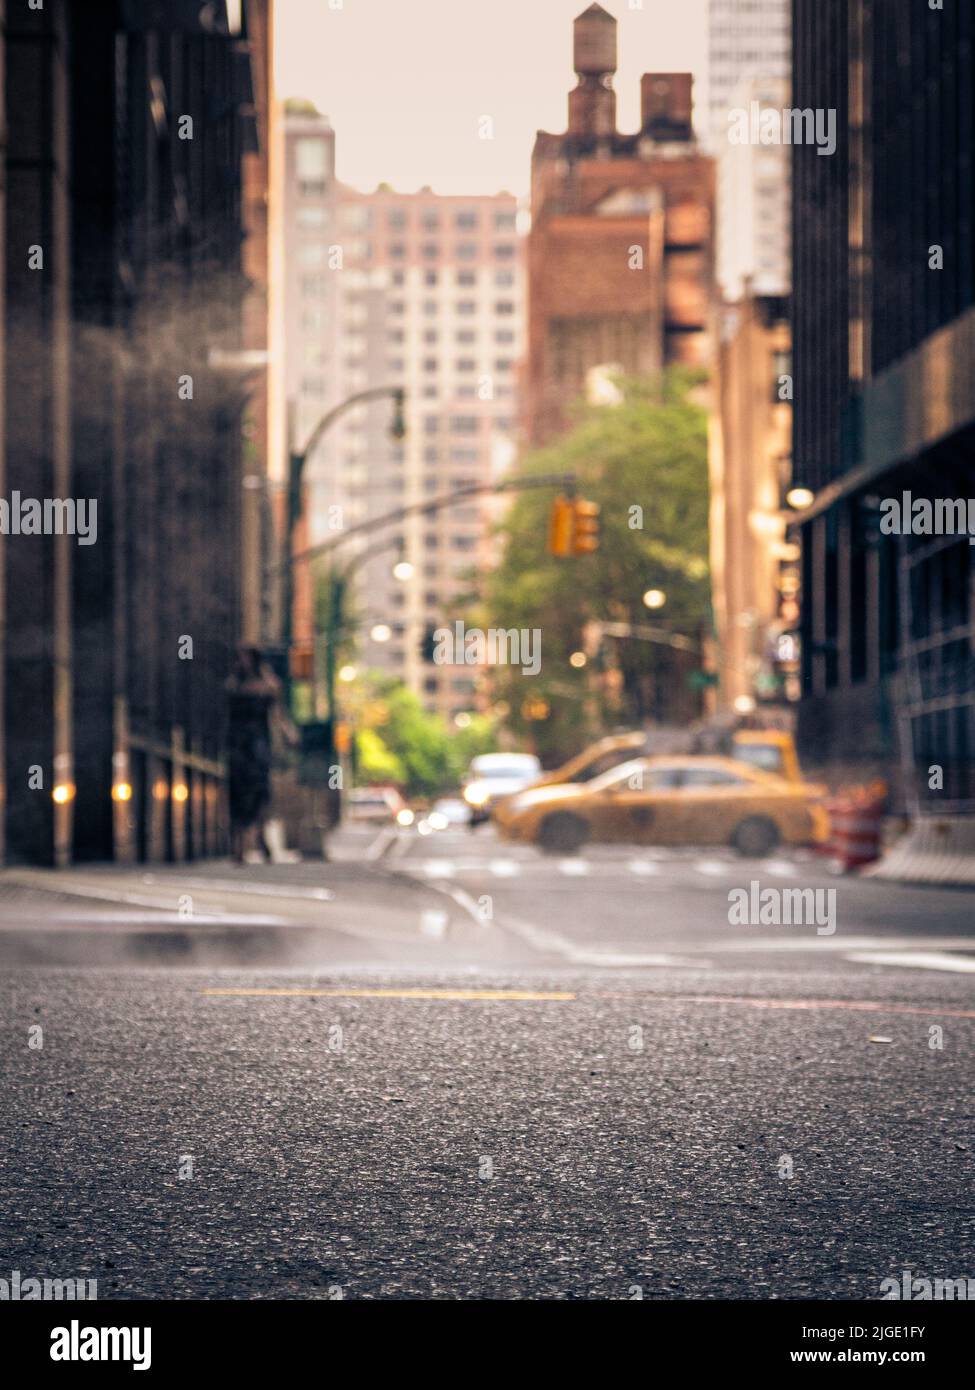 Une photo de la rue à New York. Une image qui caractérise la Grande Pomme pour moi de grands bâtiments, des taxis jaunes, la brume du métro etc Banque D'Images